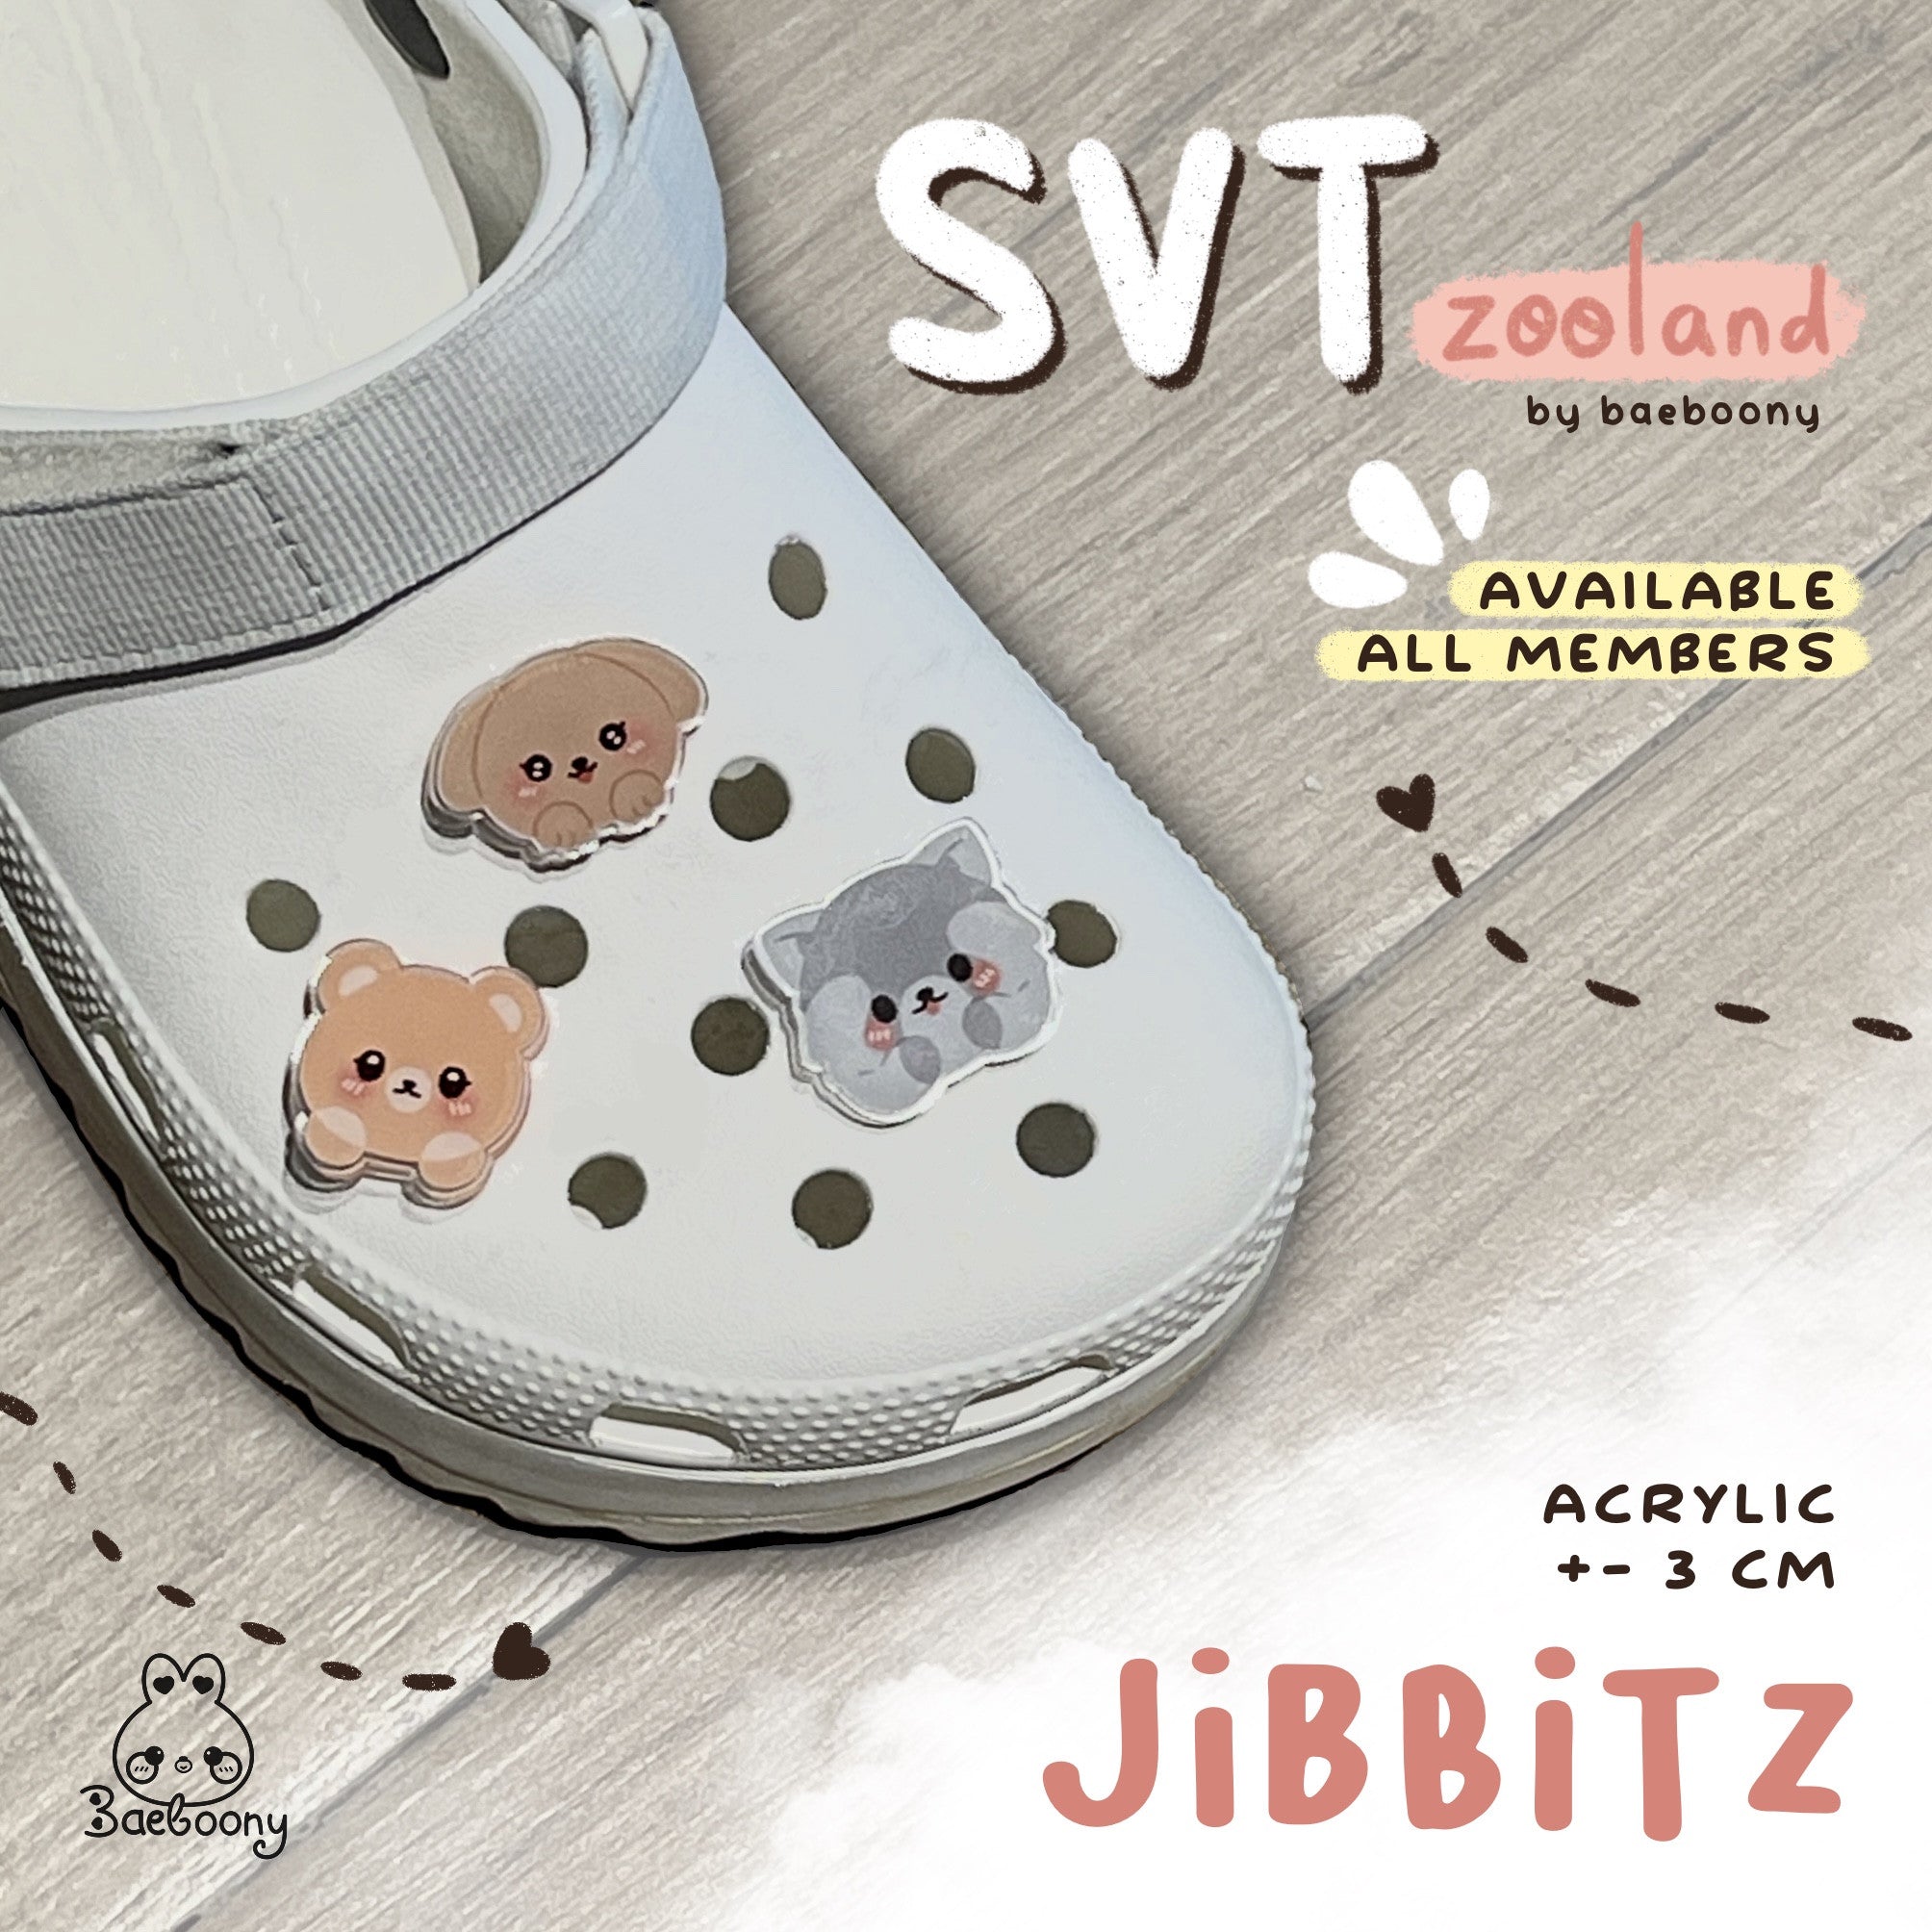 Seventeen Zooland Jibbitz by Baeboony